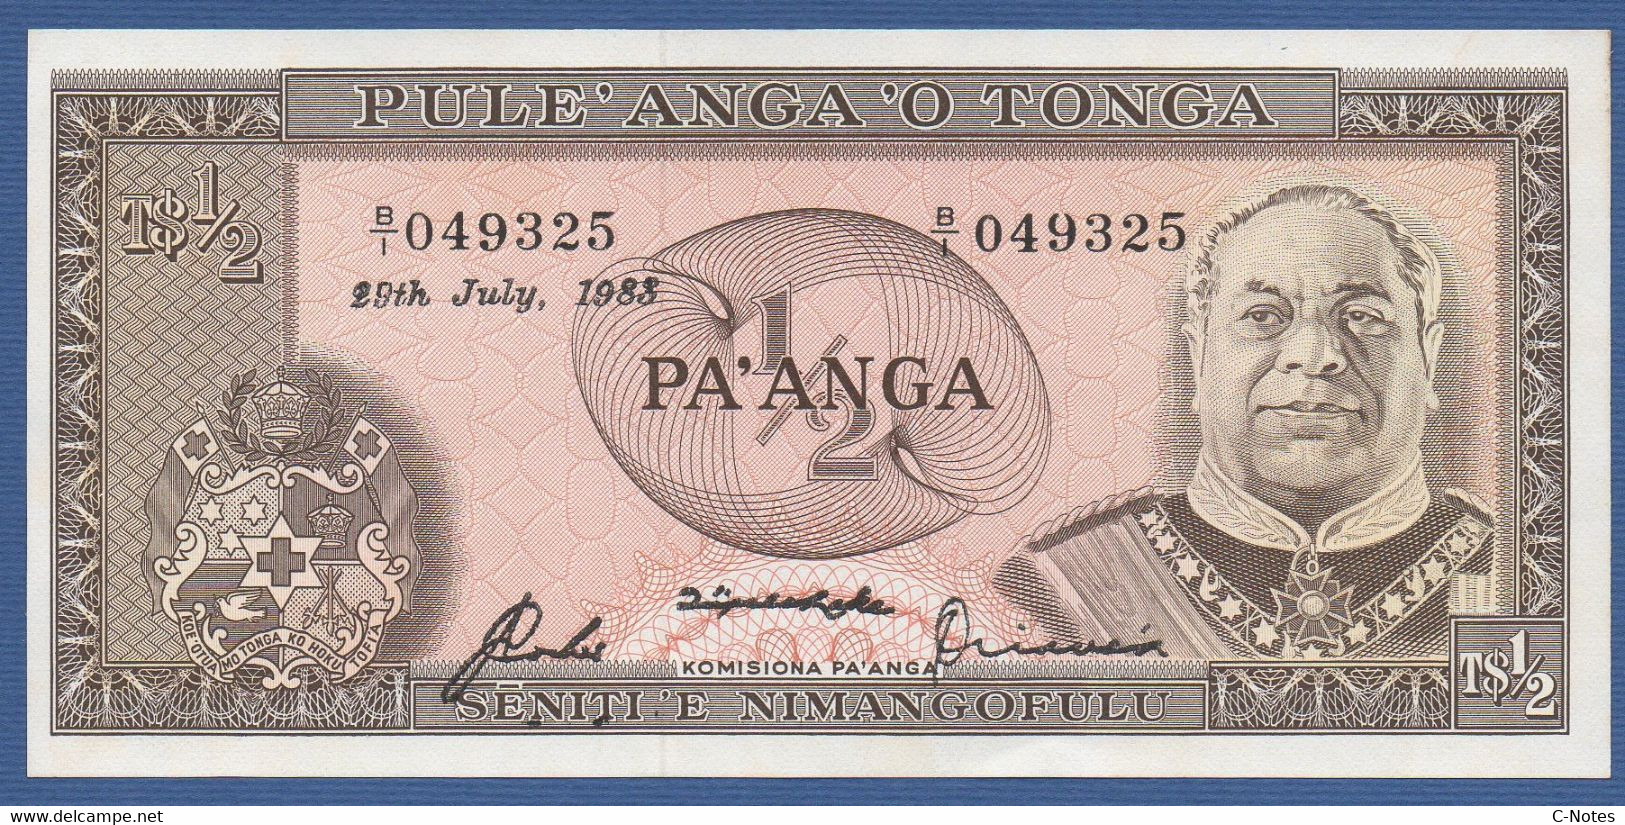 TONGA - P.18c – 1/2 PA'ANGA 29.07.1983 UNC Serie B/I 049325 - Tonga